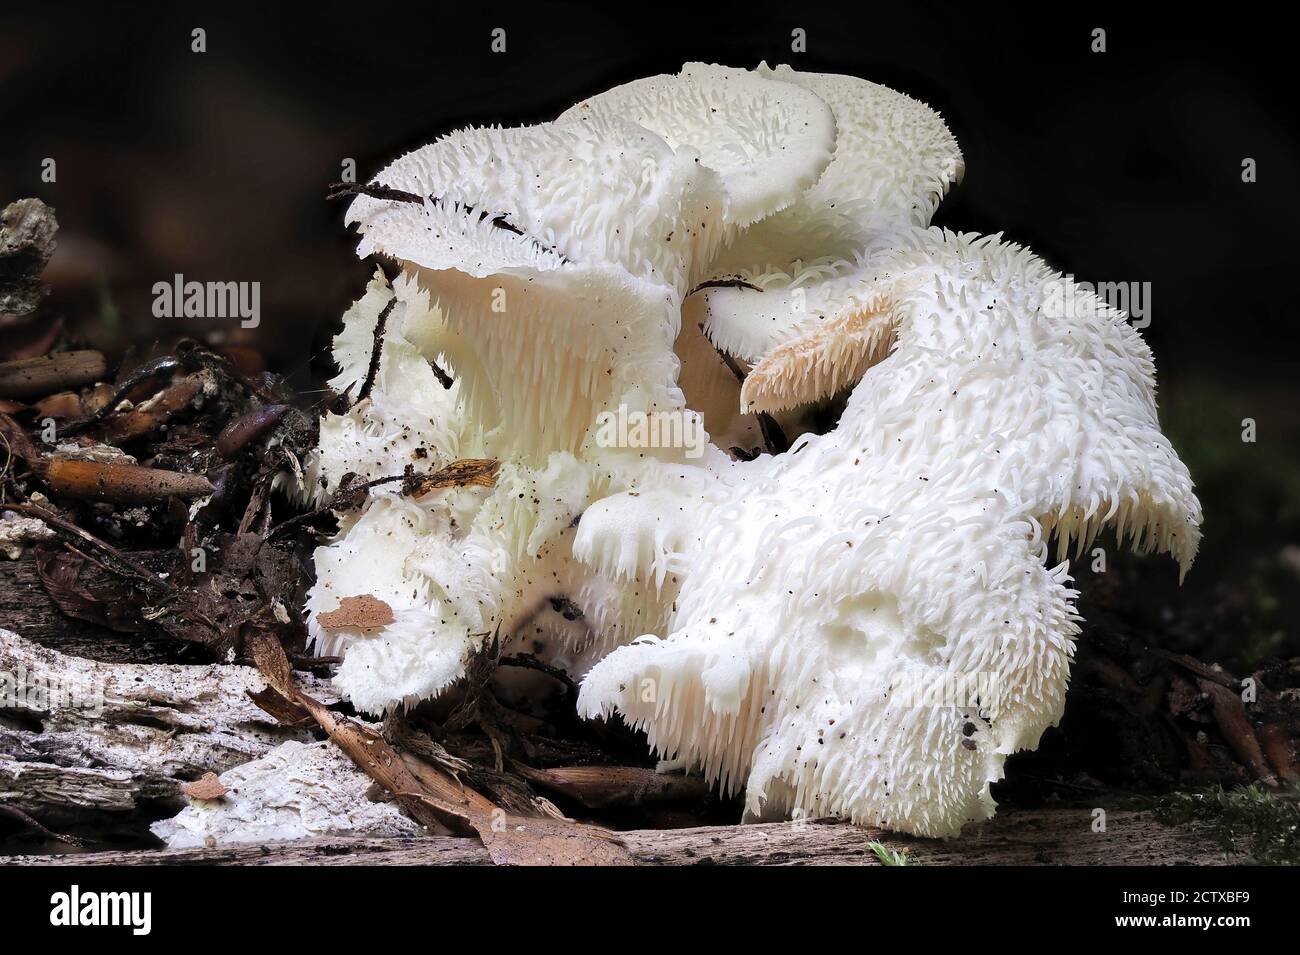 Il dente a più livelli (Hericium cirrhatum) è un fungo commestibile, foto macro impilata Foto Stock